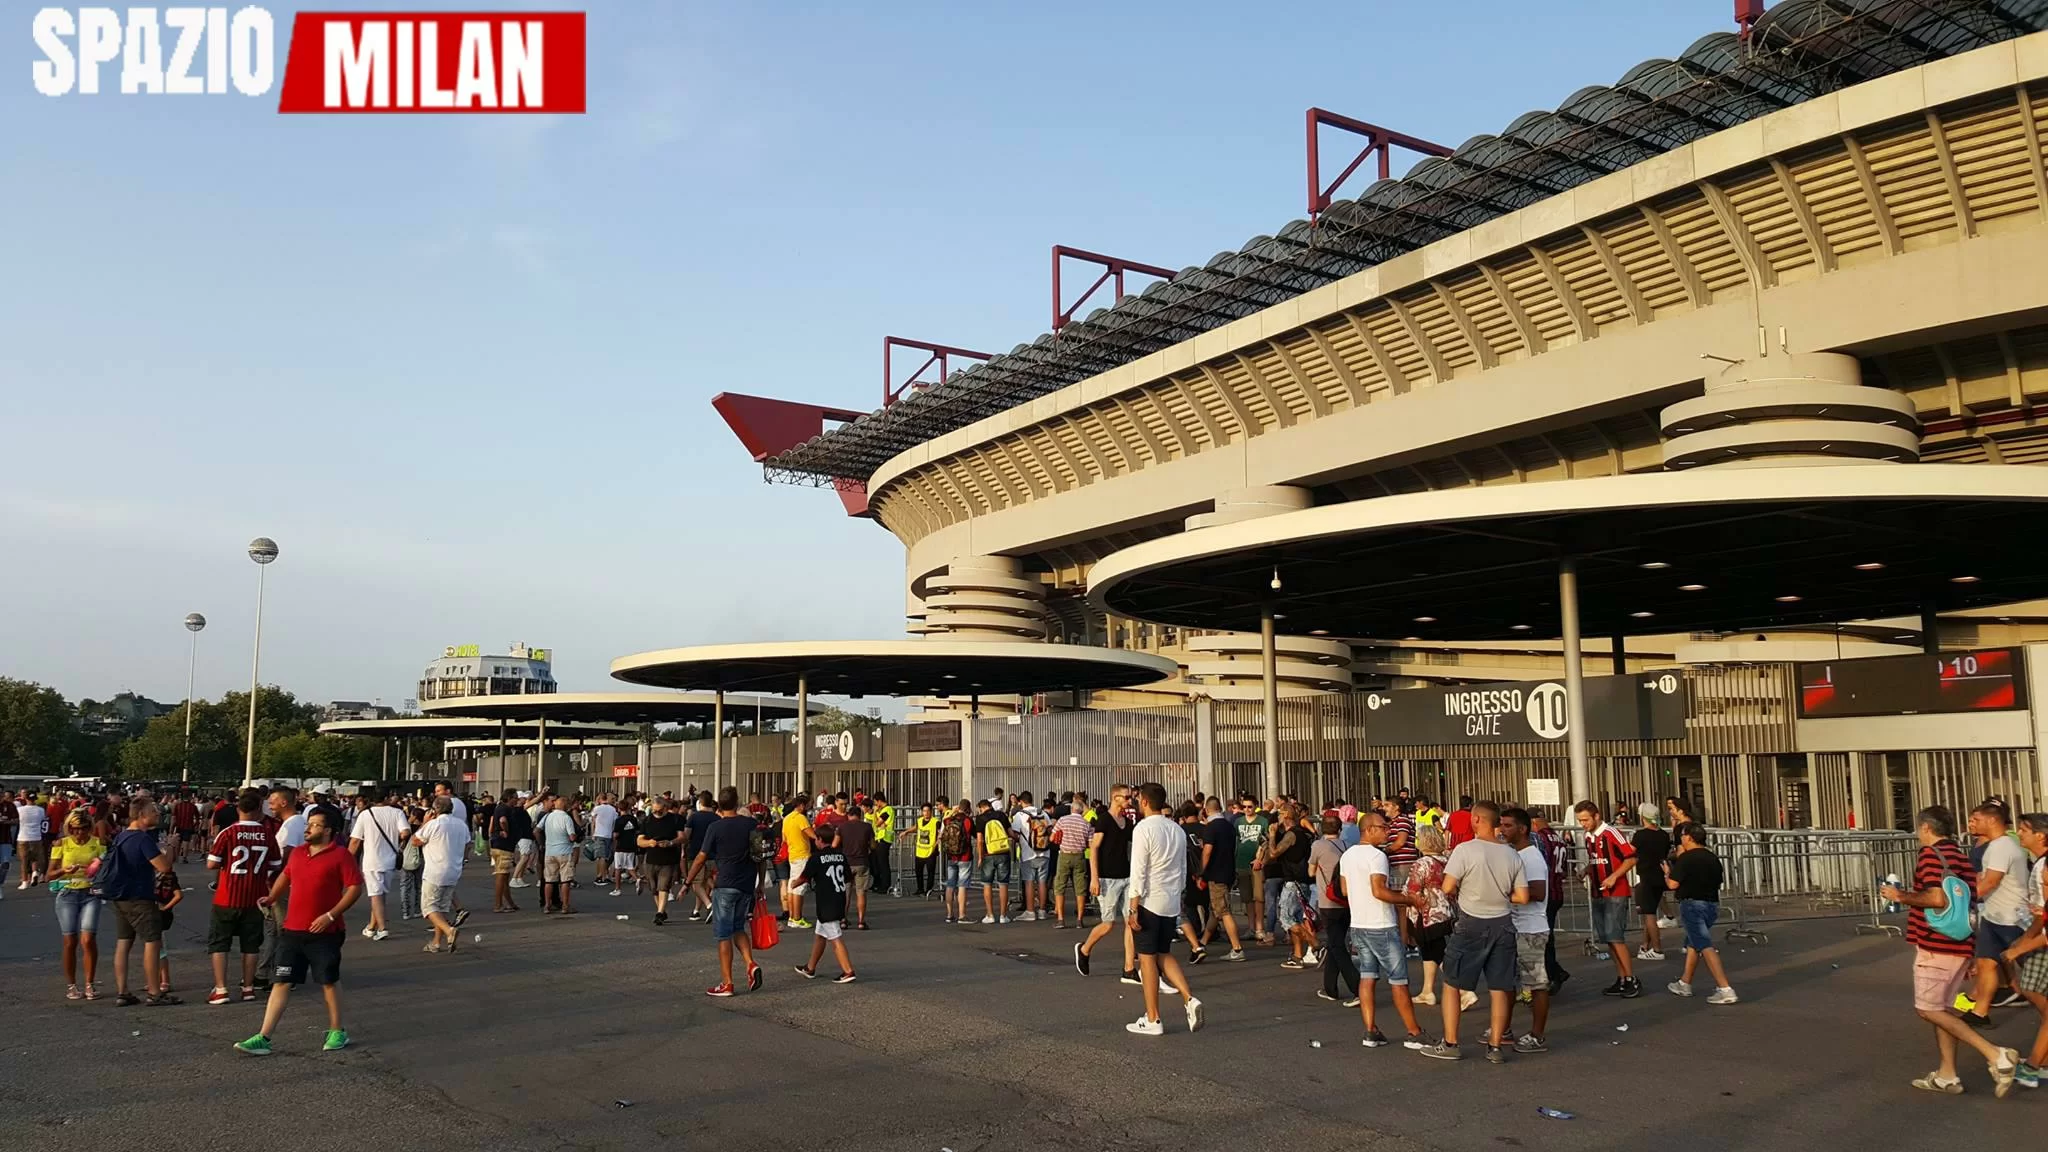 Milan-Aek Atene: biglietti ancora disponibili per la gara europea. Le info